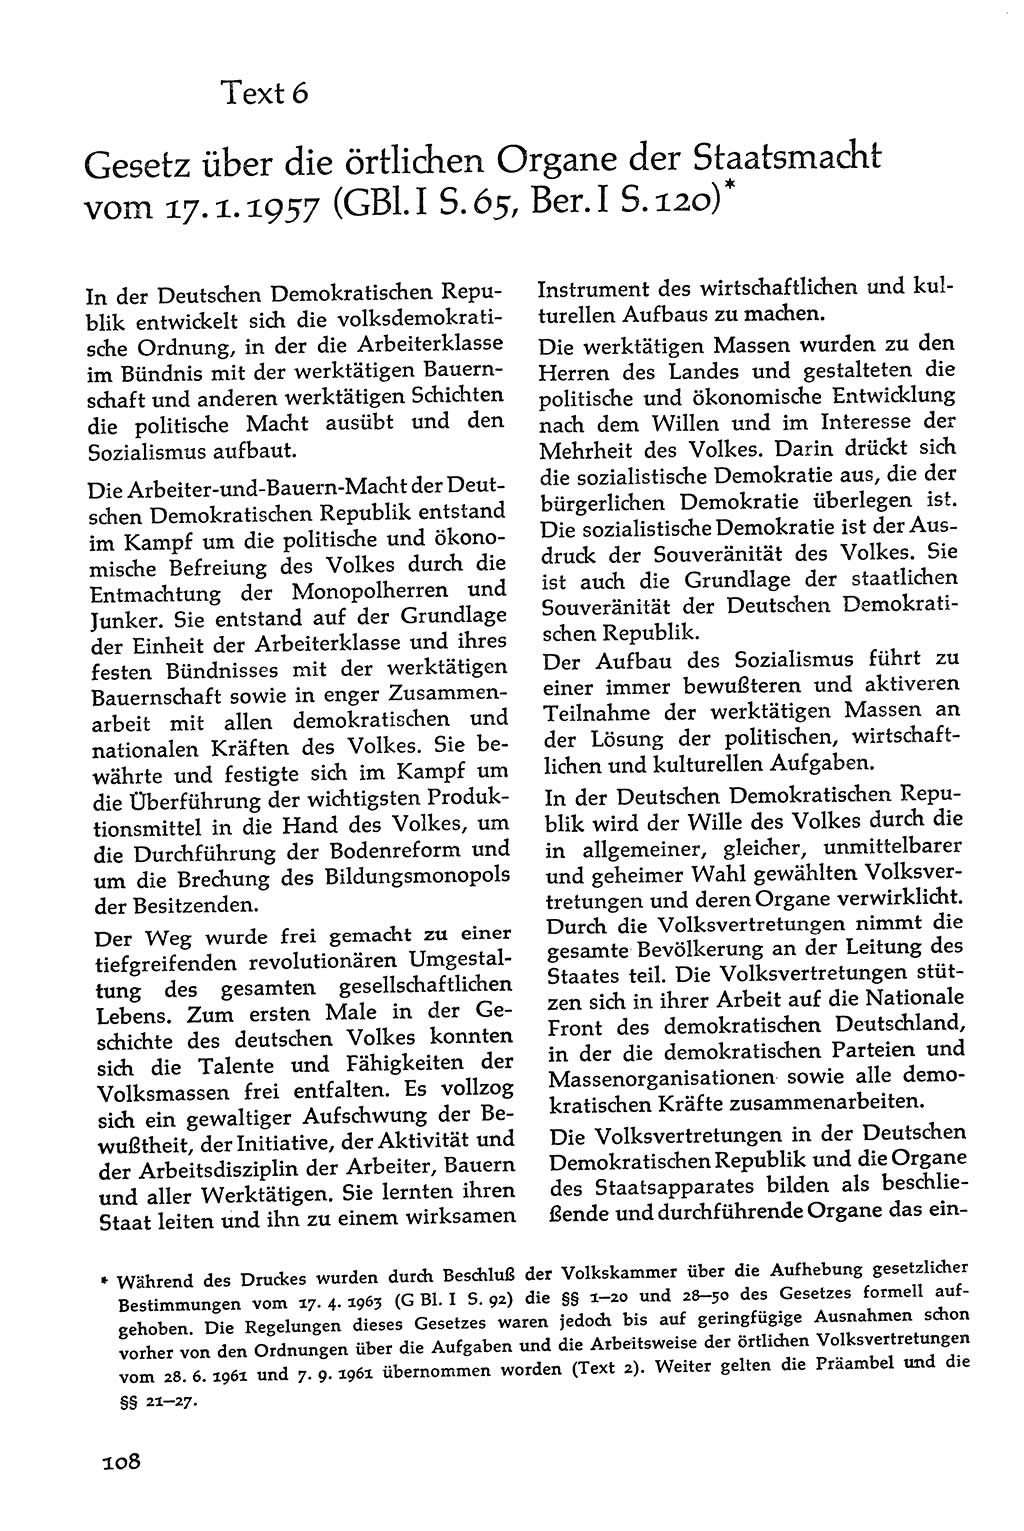 Volksdemokratische Ordnung in Mitteldeutschland [Deutsche Demokratische Republik (DDR)], Texte zur verfassungsrechtlichen Situation 1963, Seite 108 (Volksdem. Ordn. Md. DDR 1963, S. 108)